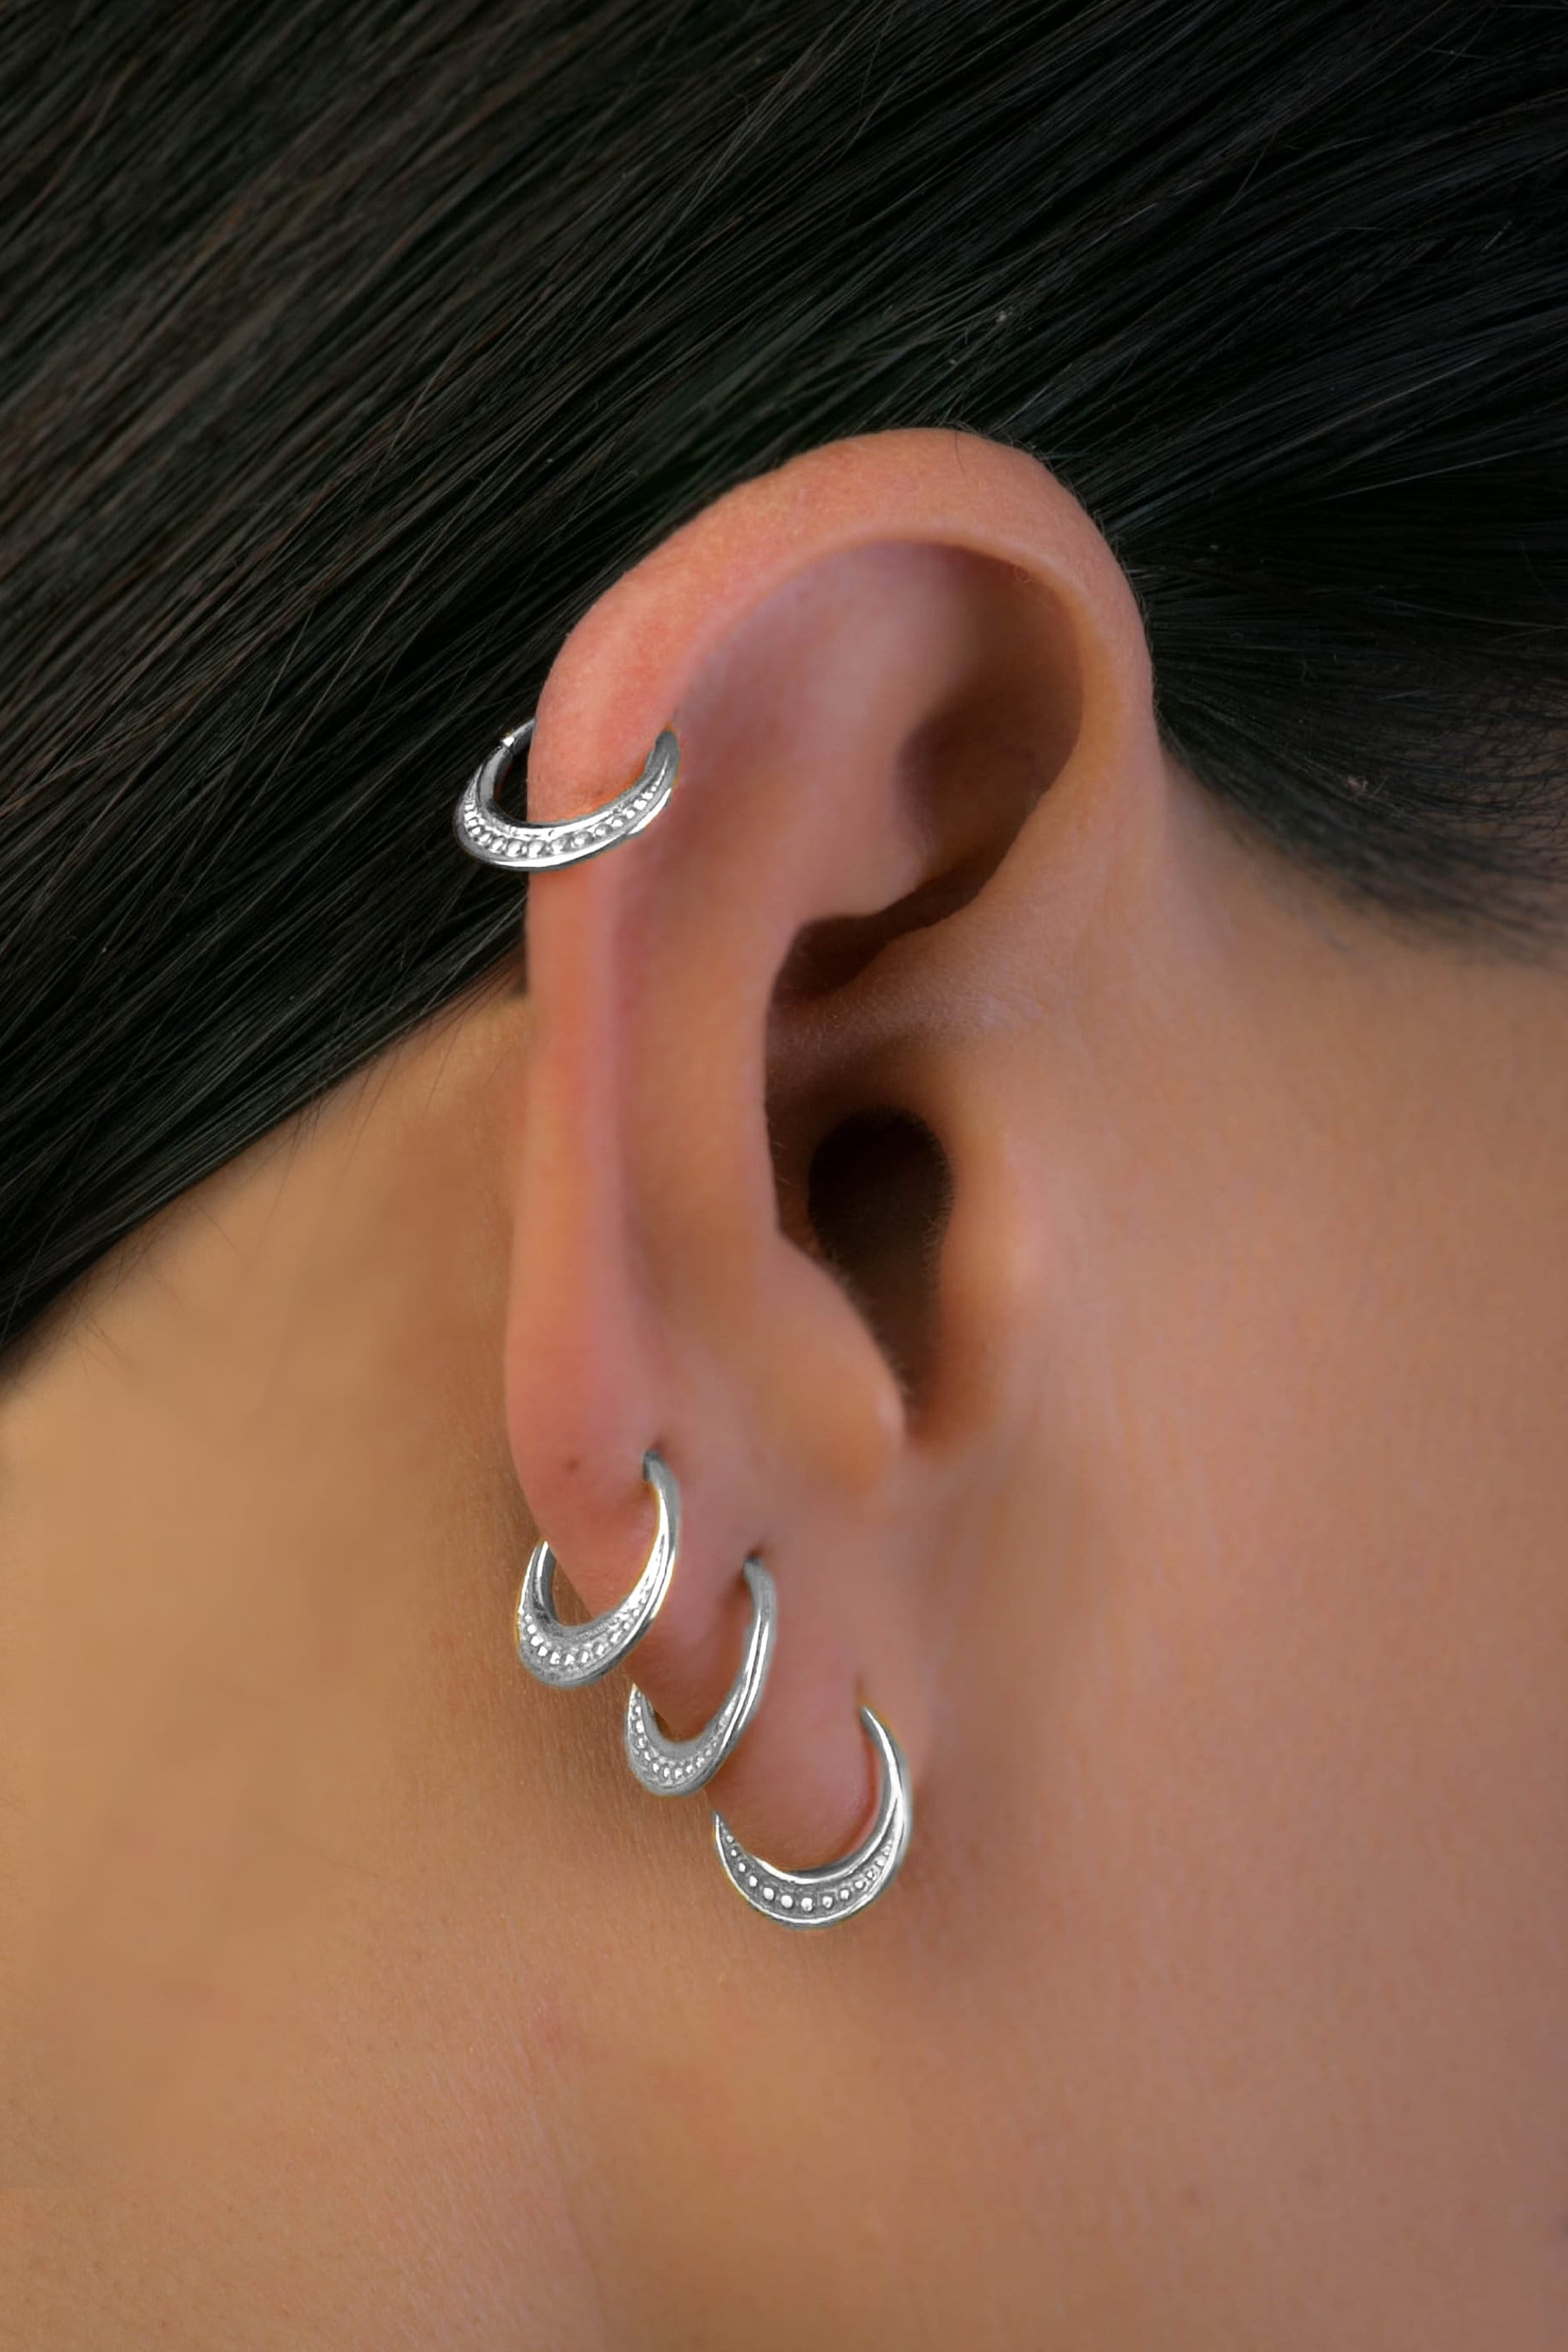 Ear Piercing Studs | Gold Studs & Sterling Silver Studs-sgquangbinhtourist.com.vn